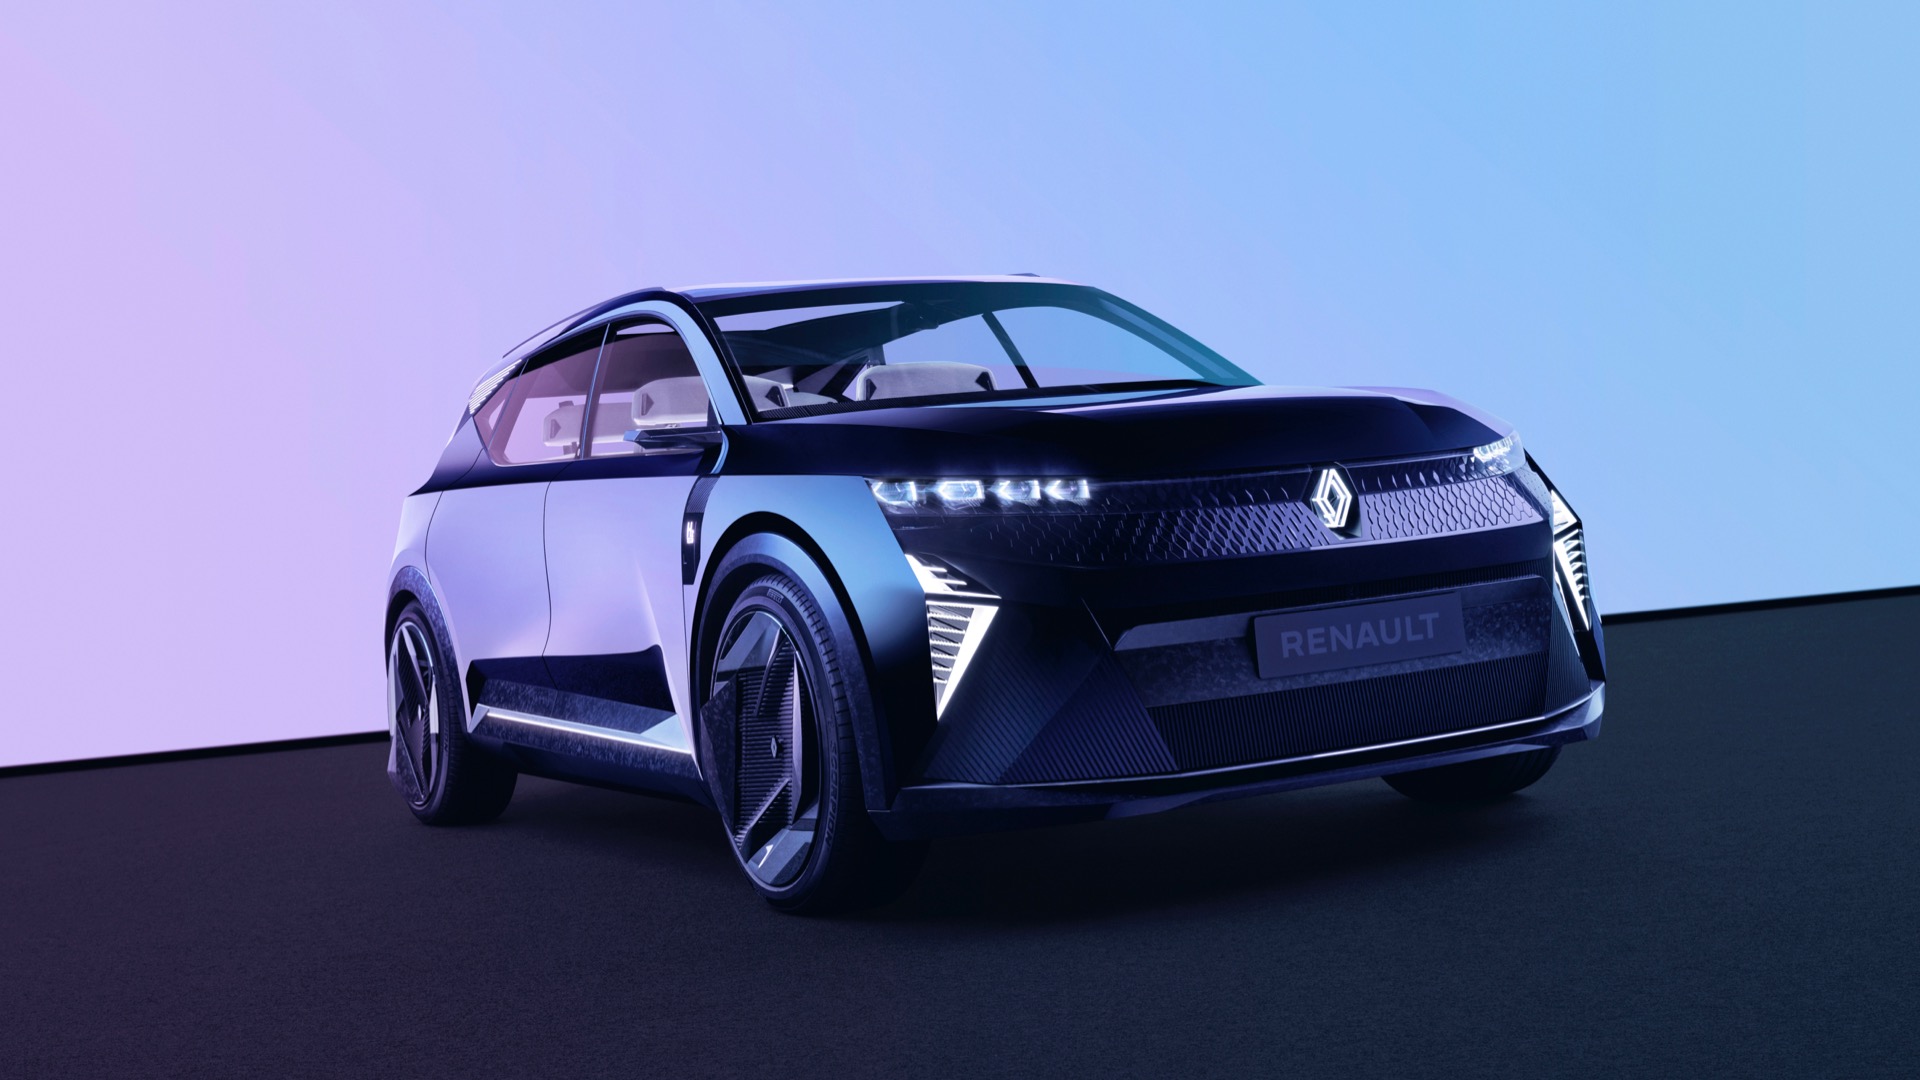 Renault Scénic Vision EV concept: Fuel-cell range extender enables smaller, lighter battery